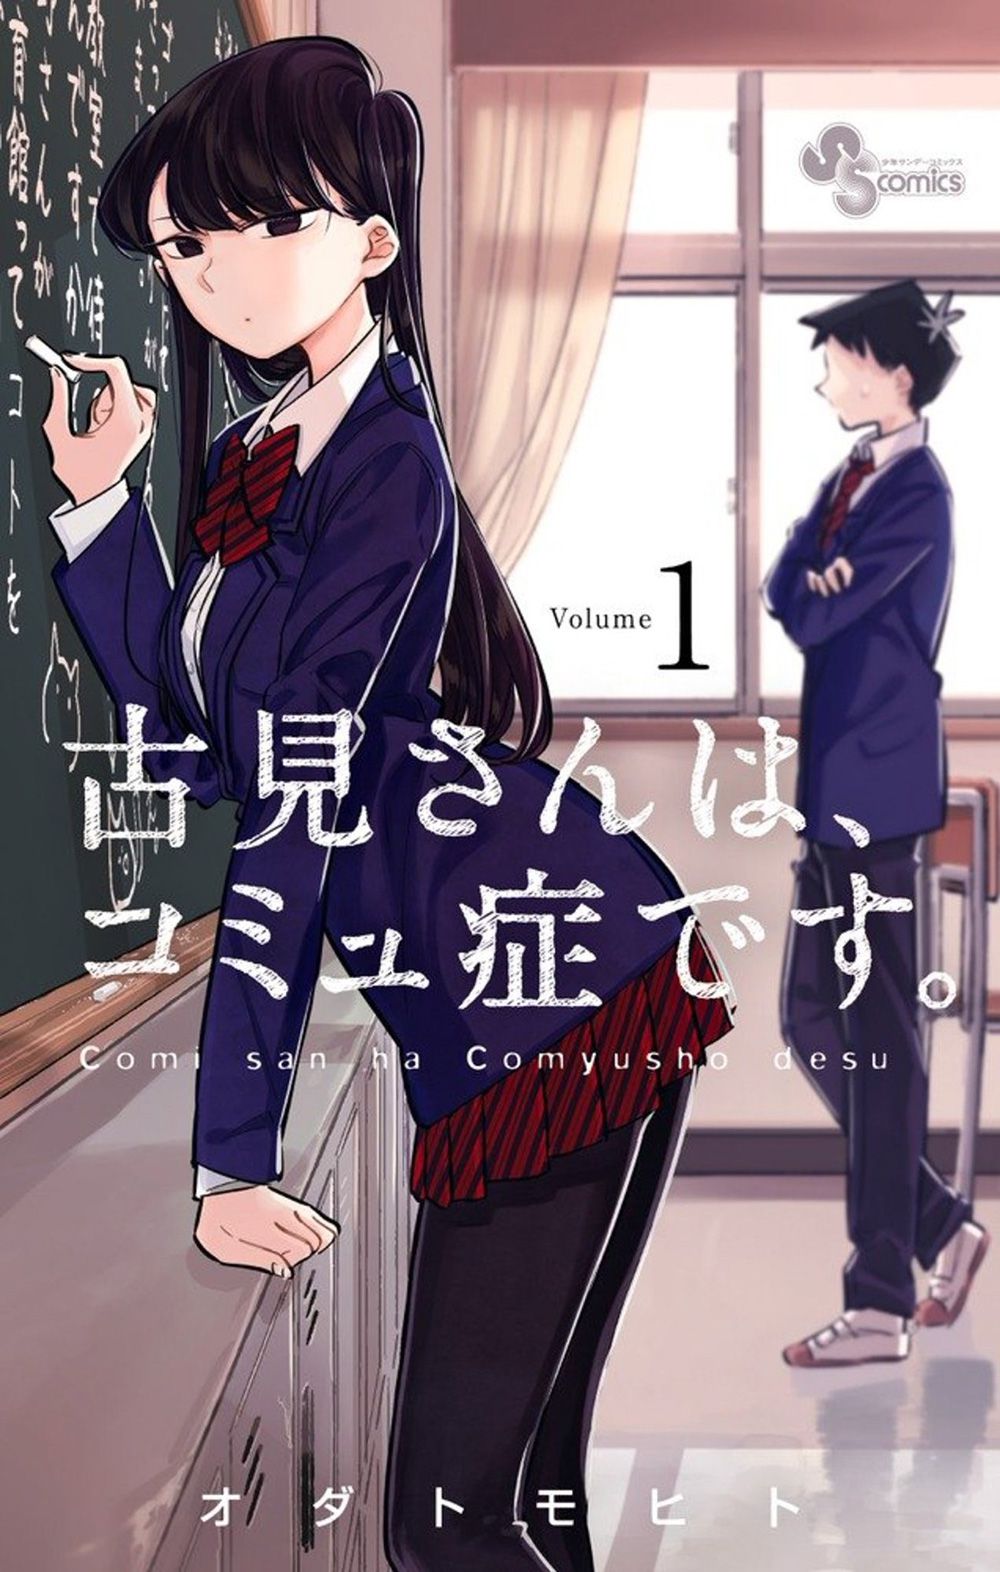 Komi-san-wa,-Comyushou-desu.-Vol-1-Cover